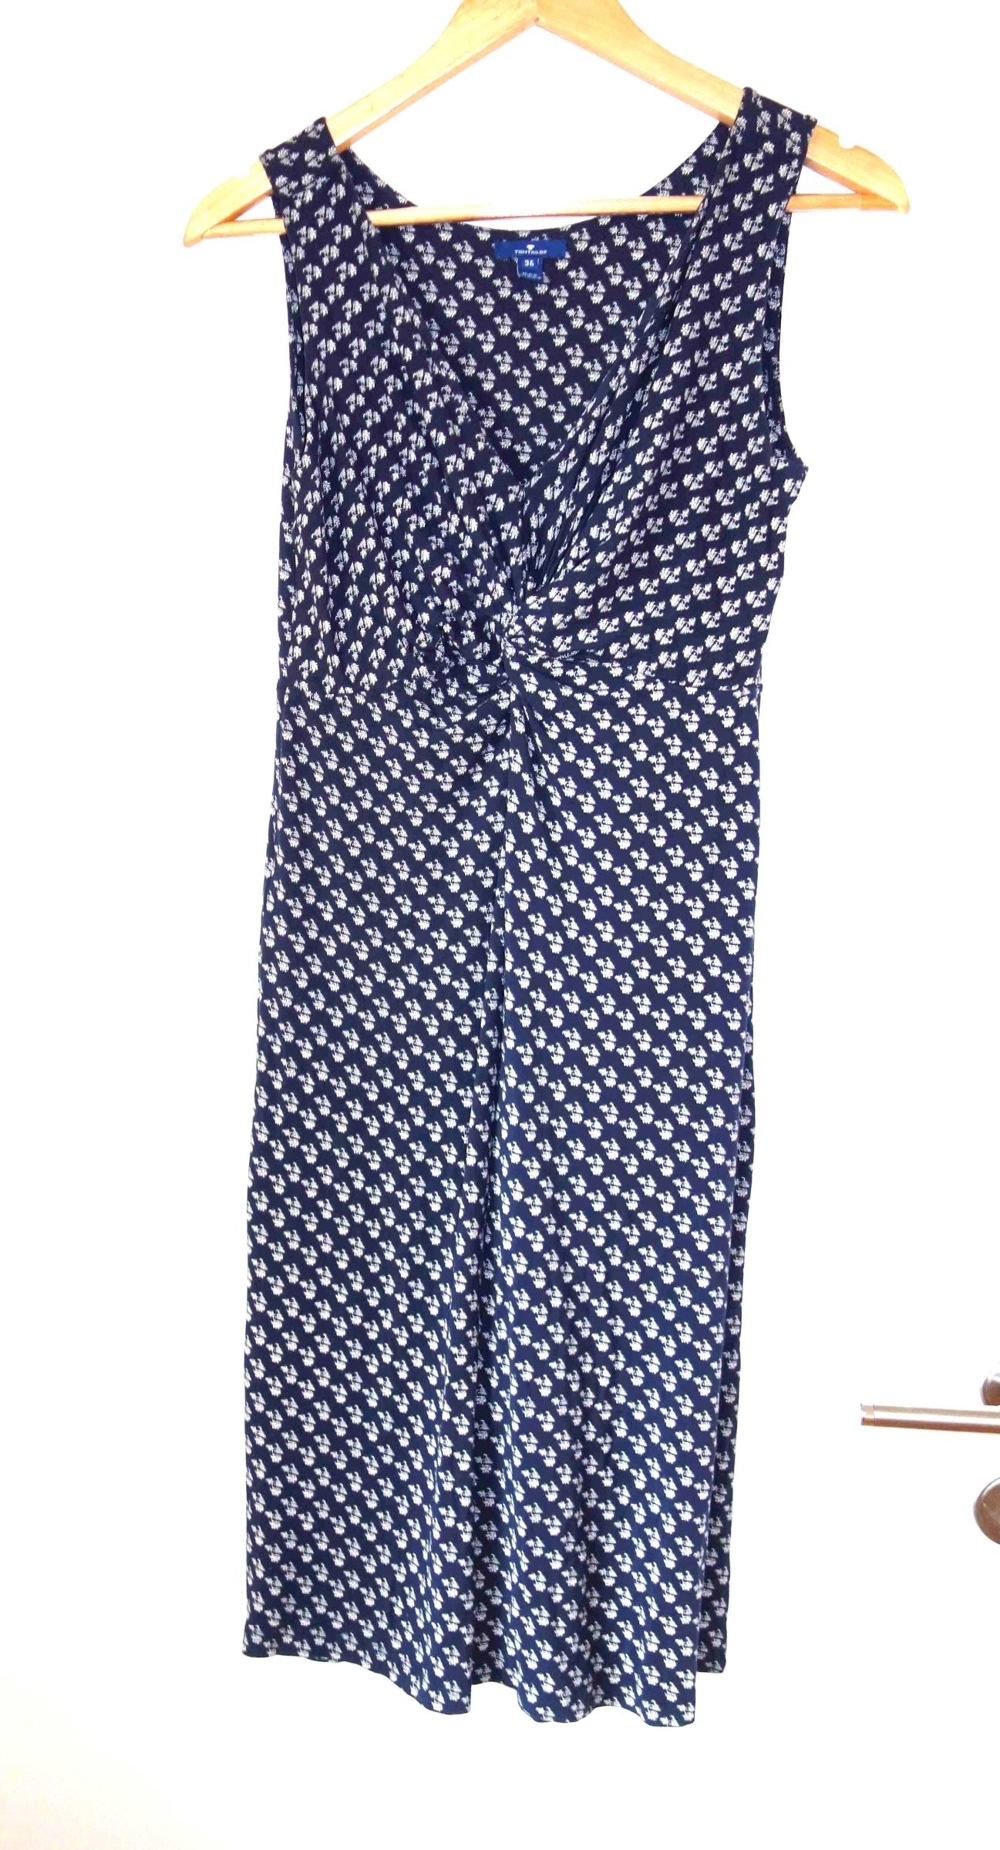 NEU blaues Kleid mit weißem Muster Größe 36 von Tom Tailor